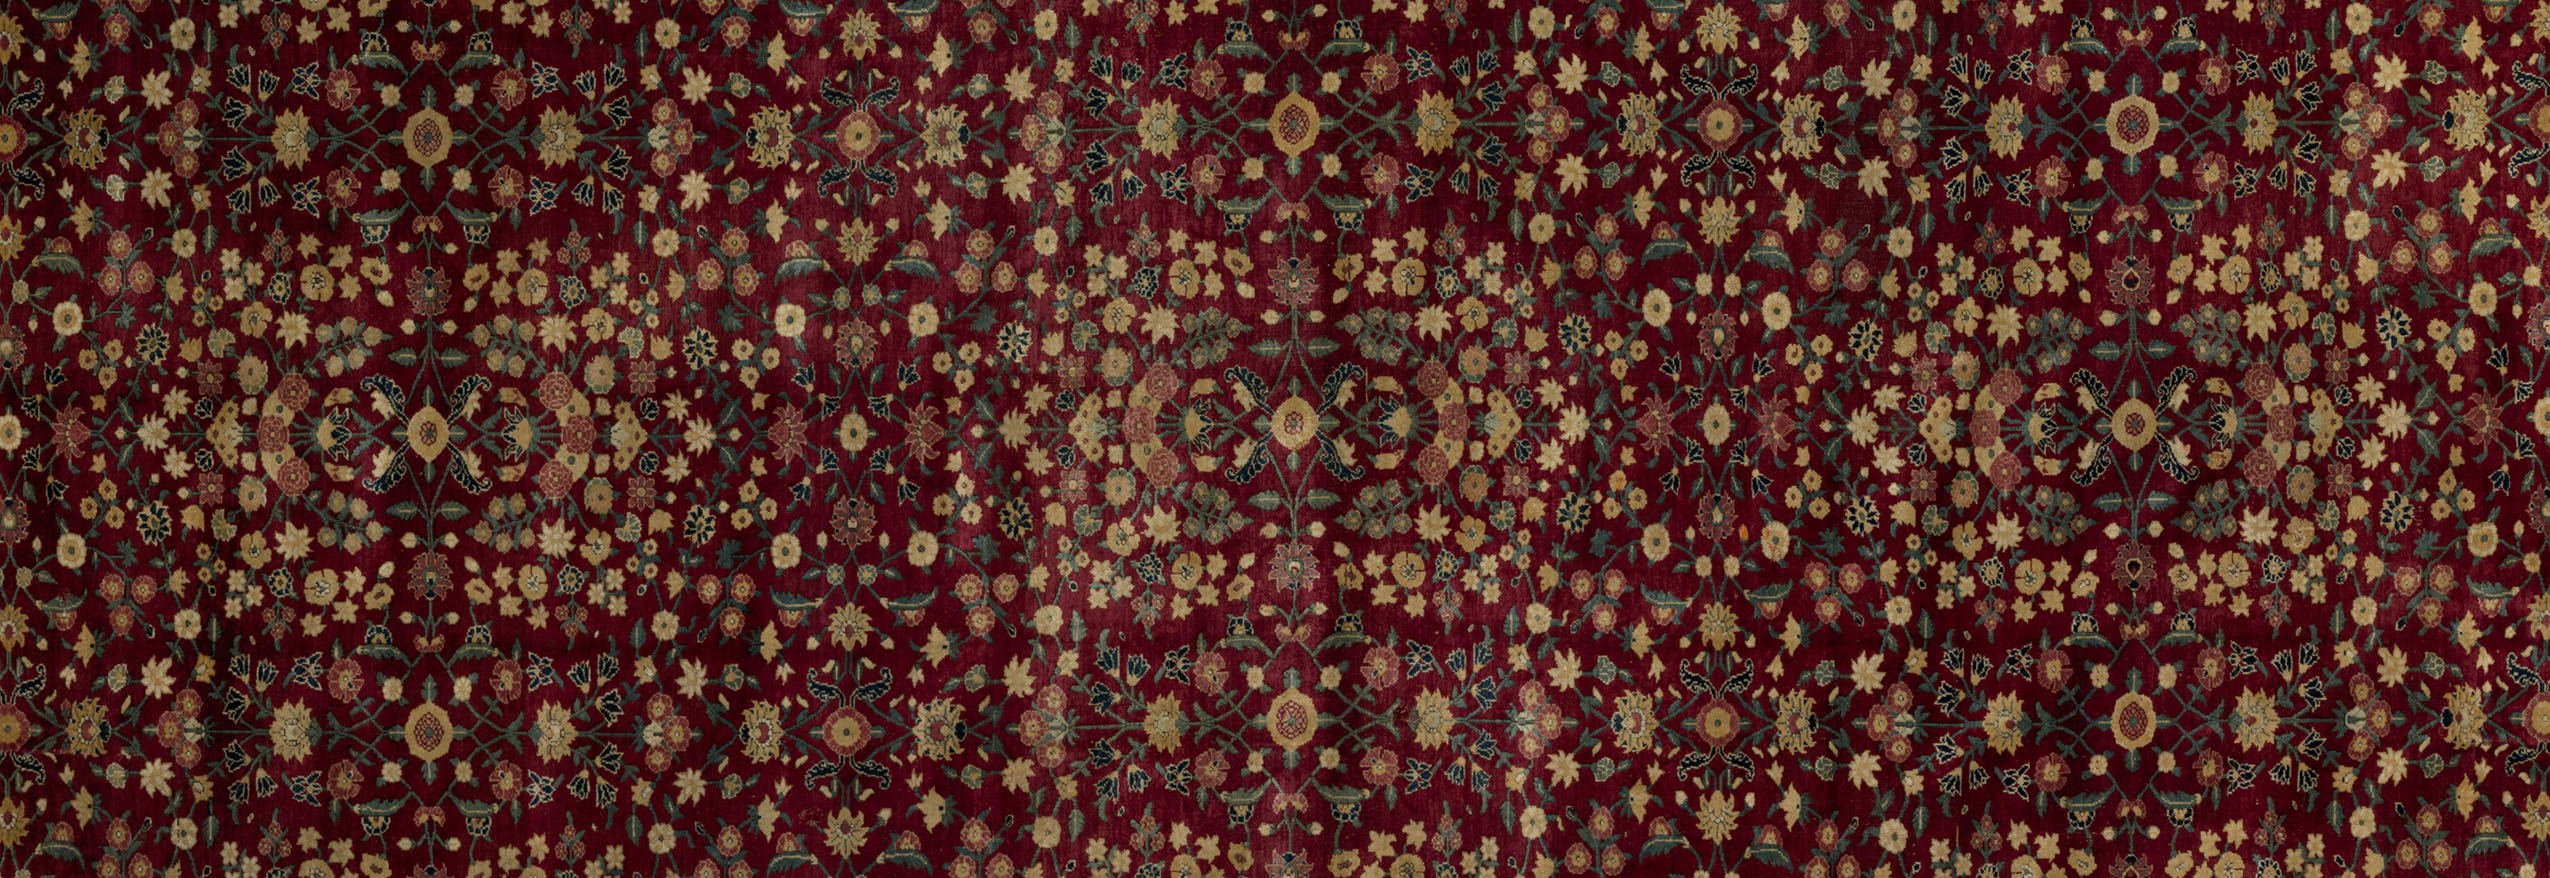 Buy Kuber Industries Carpet, Water Absorption Embossed Floral Pattern Floor  Mat